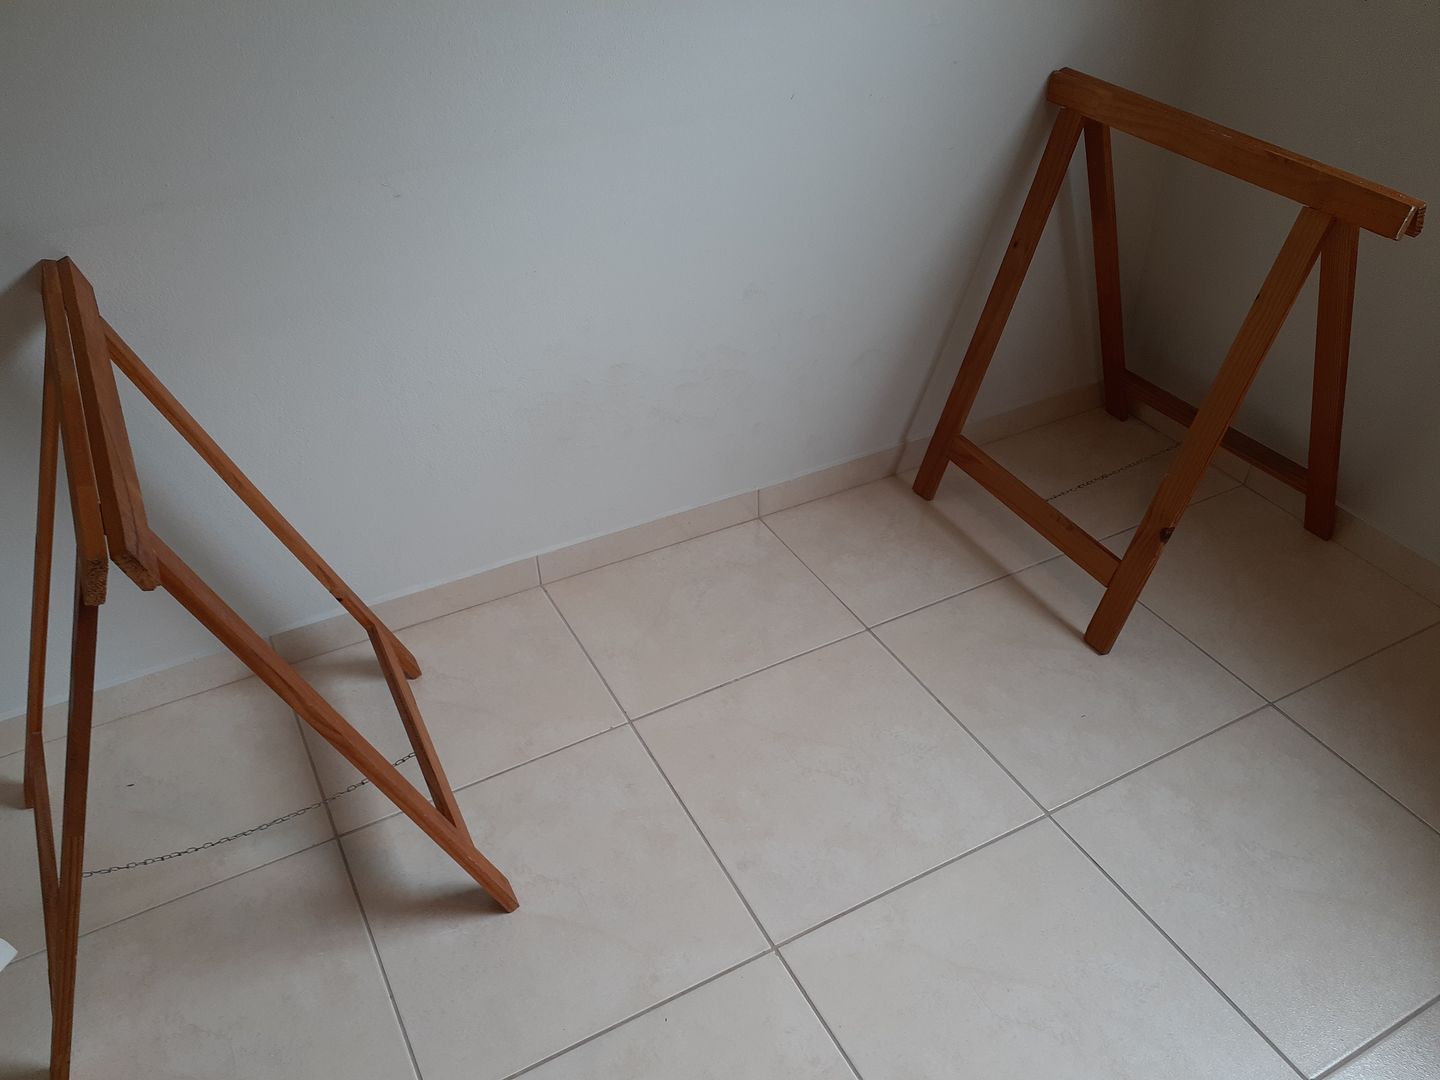 Principiante] Que tipo de madera deveria usar para hacer una mesa de  trabajo para mi taller? : r/Carpinteria